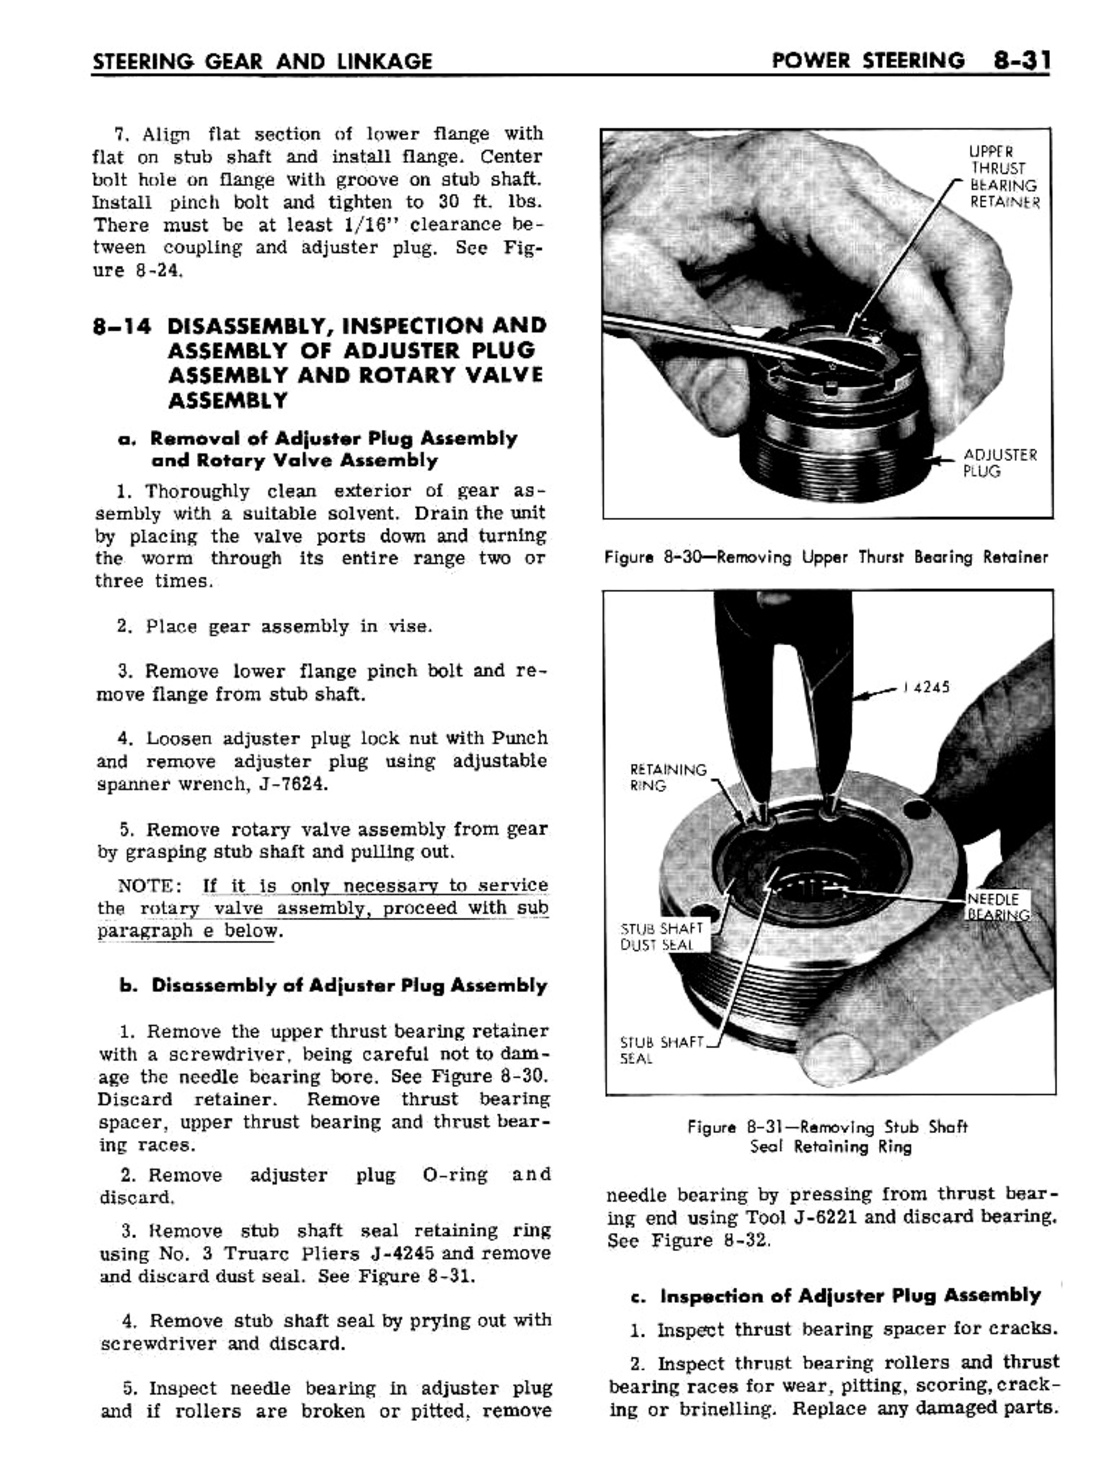 n_08 1961 Buick Shop Manual - Steering-031-031.jpg